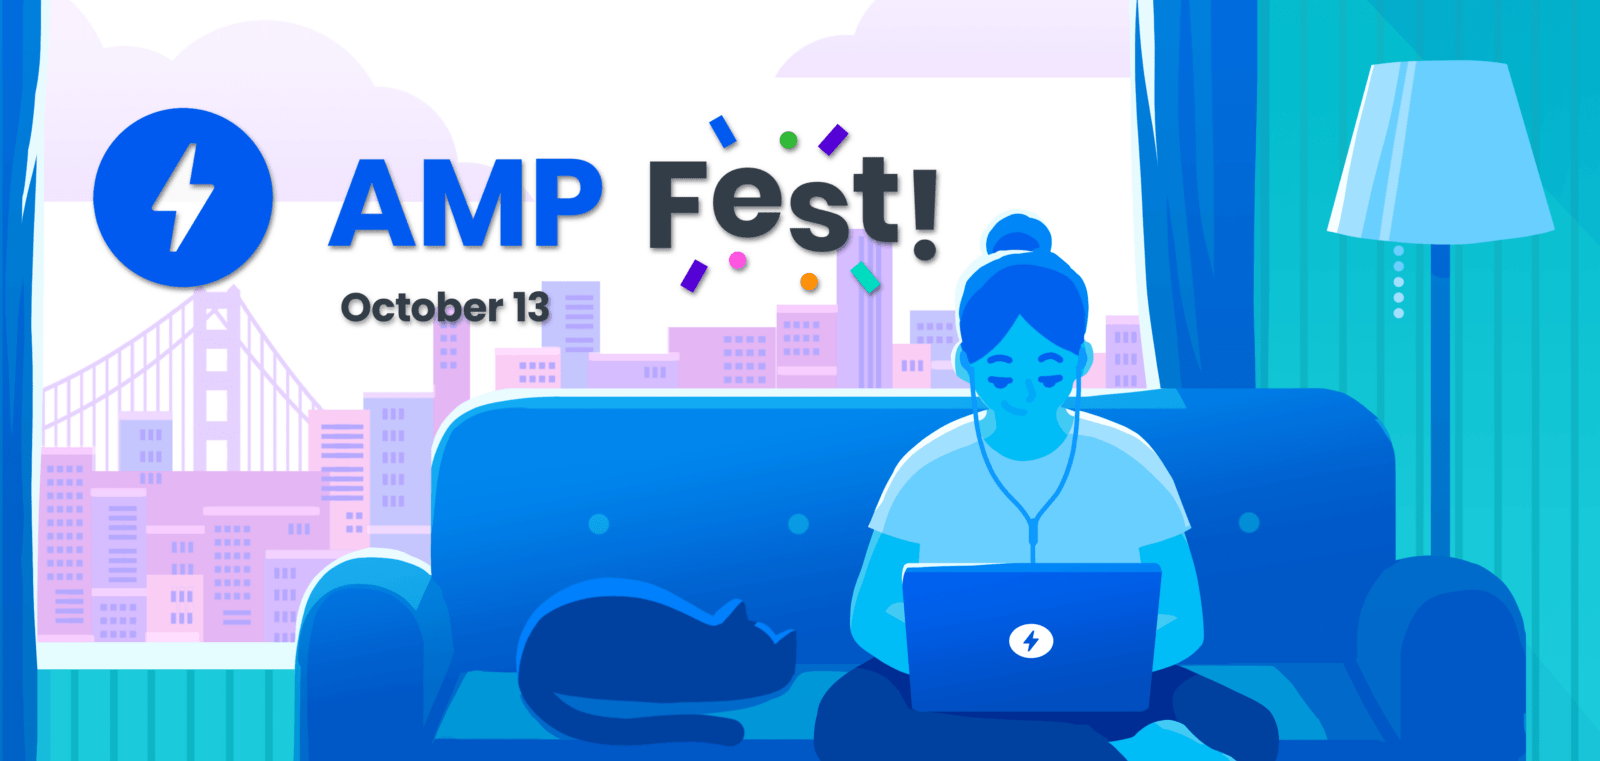 AMP Fest 2020